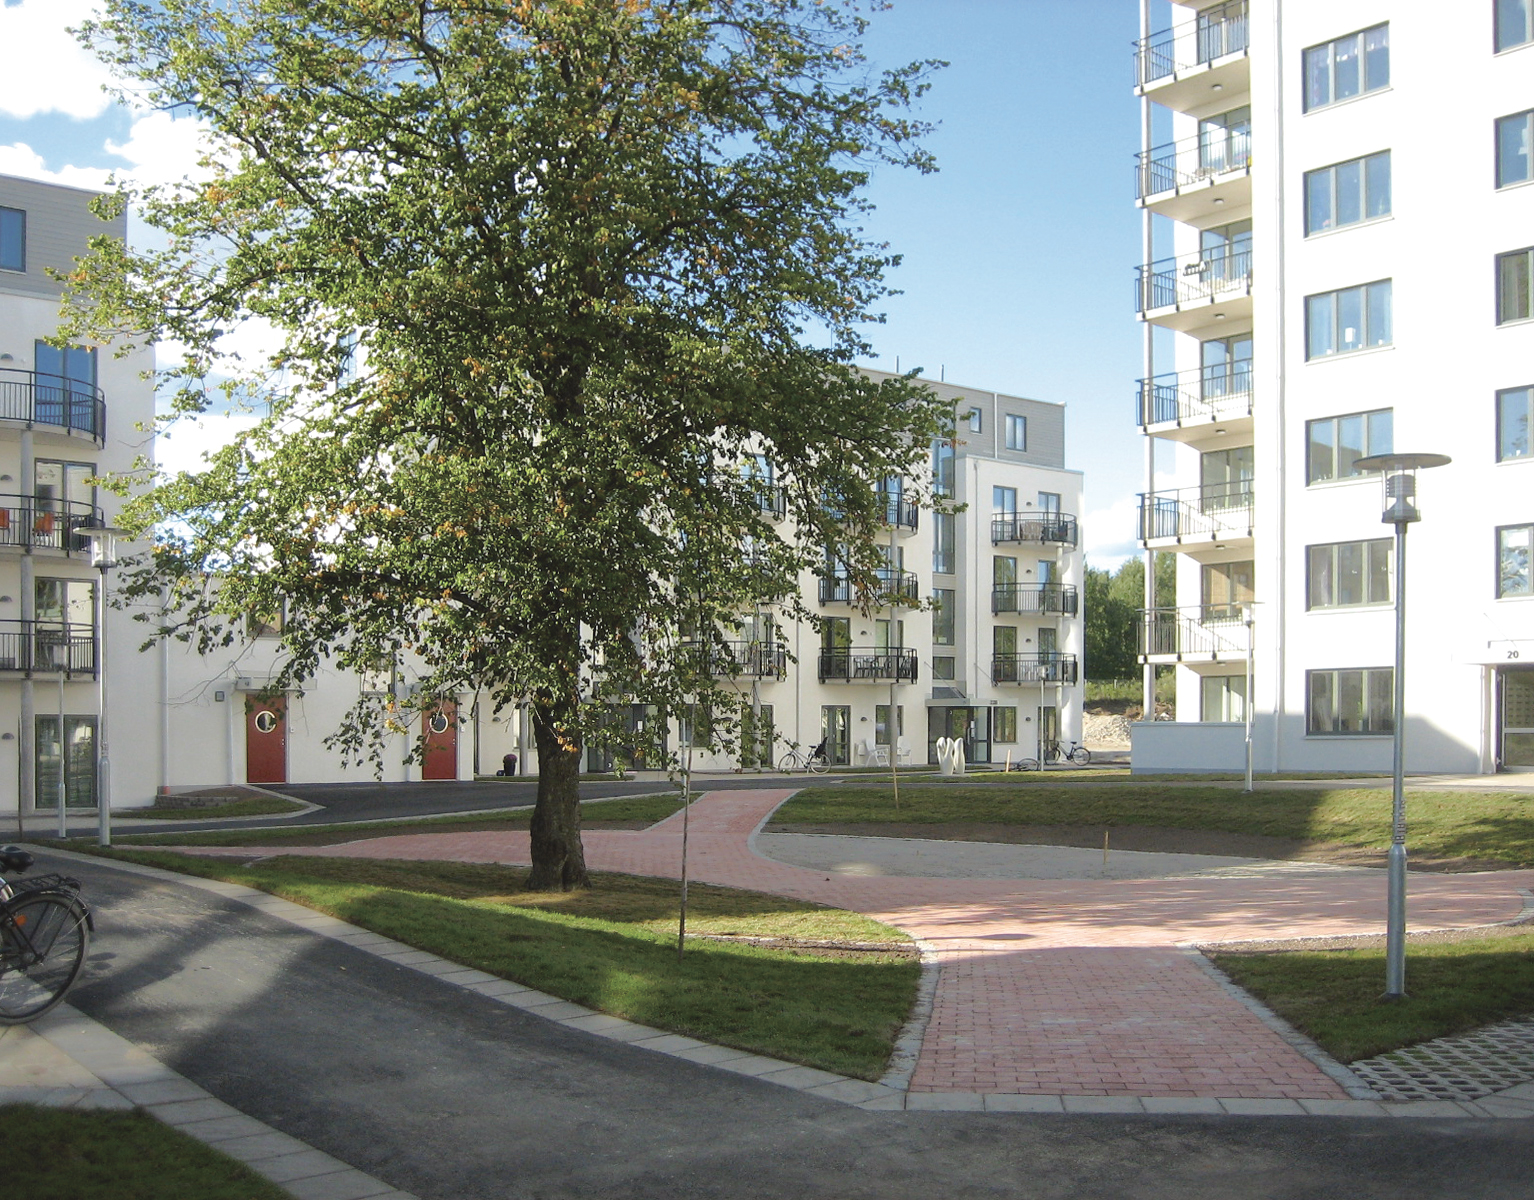 Dwellings in Växjö 